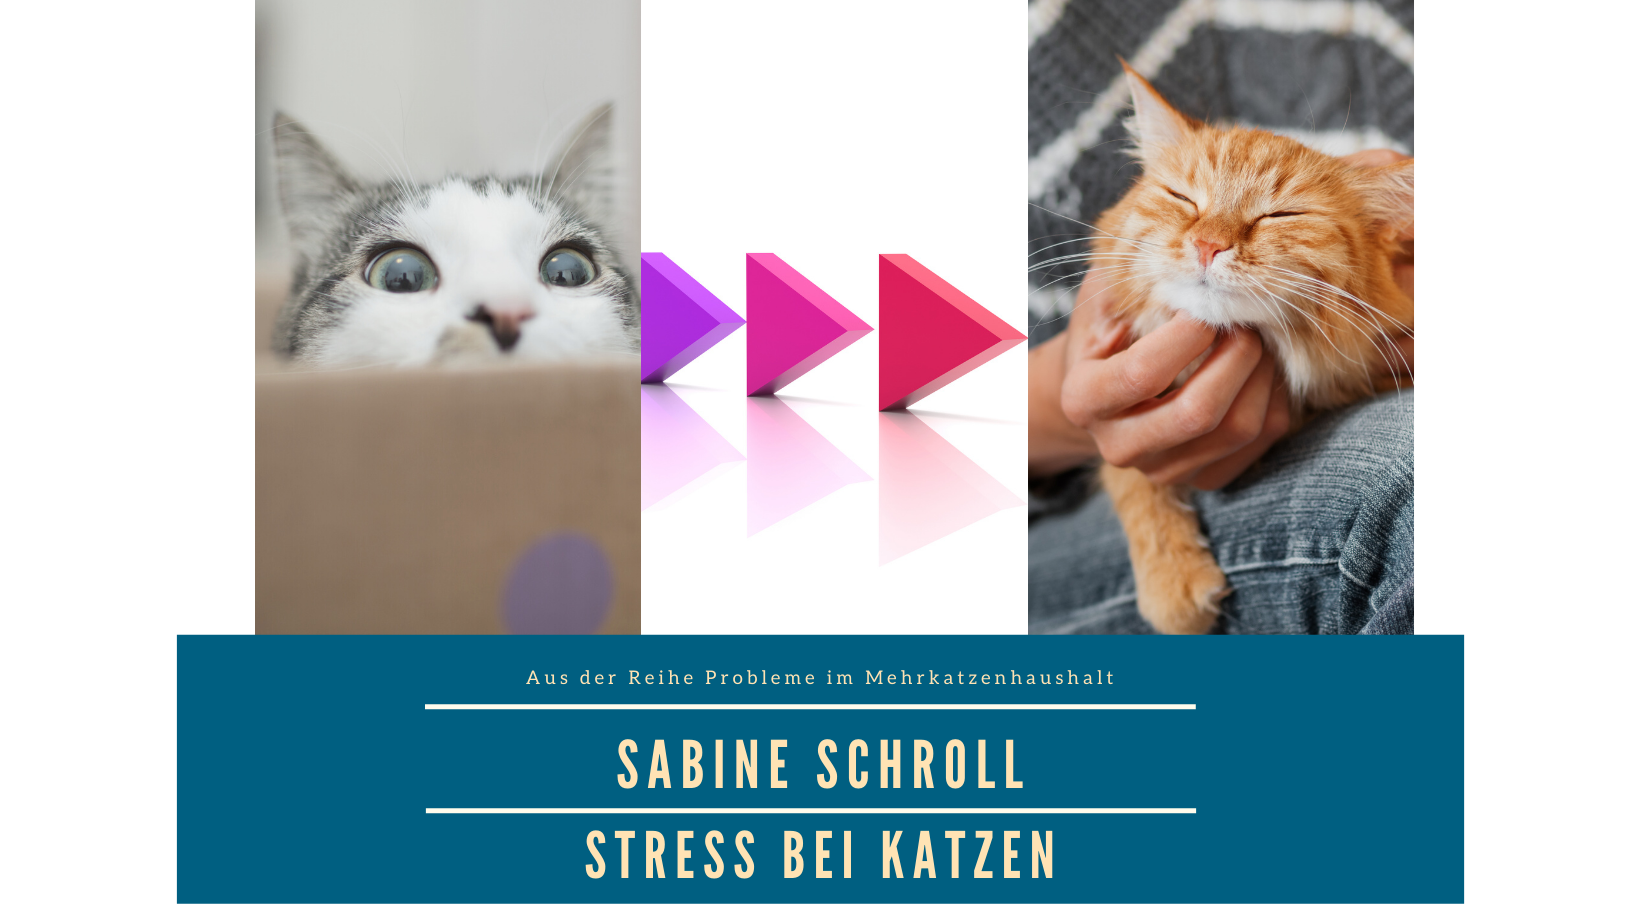 Stress bei Katzen Sabine Schroll